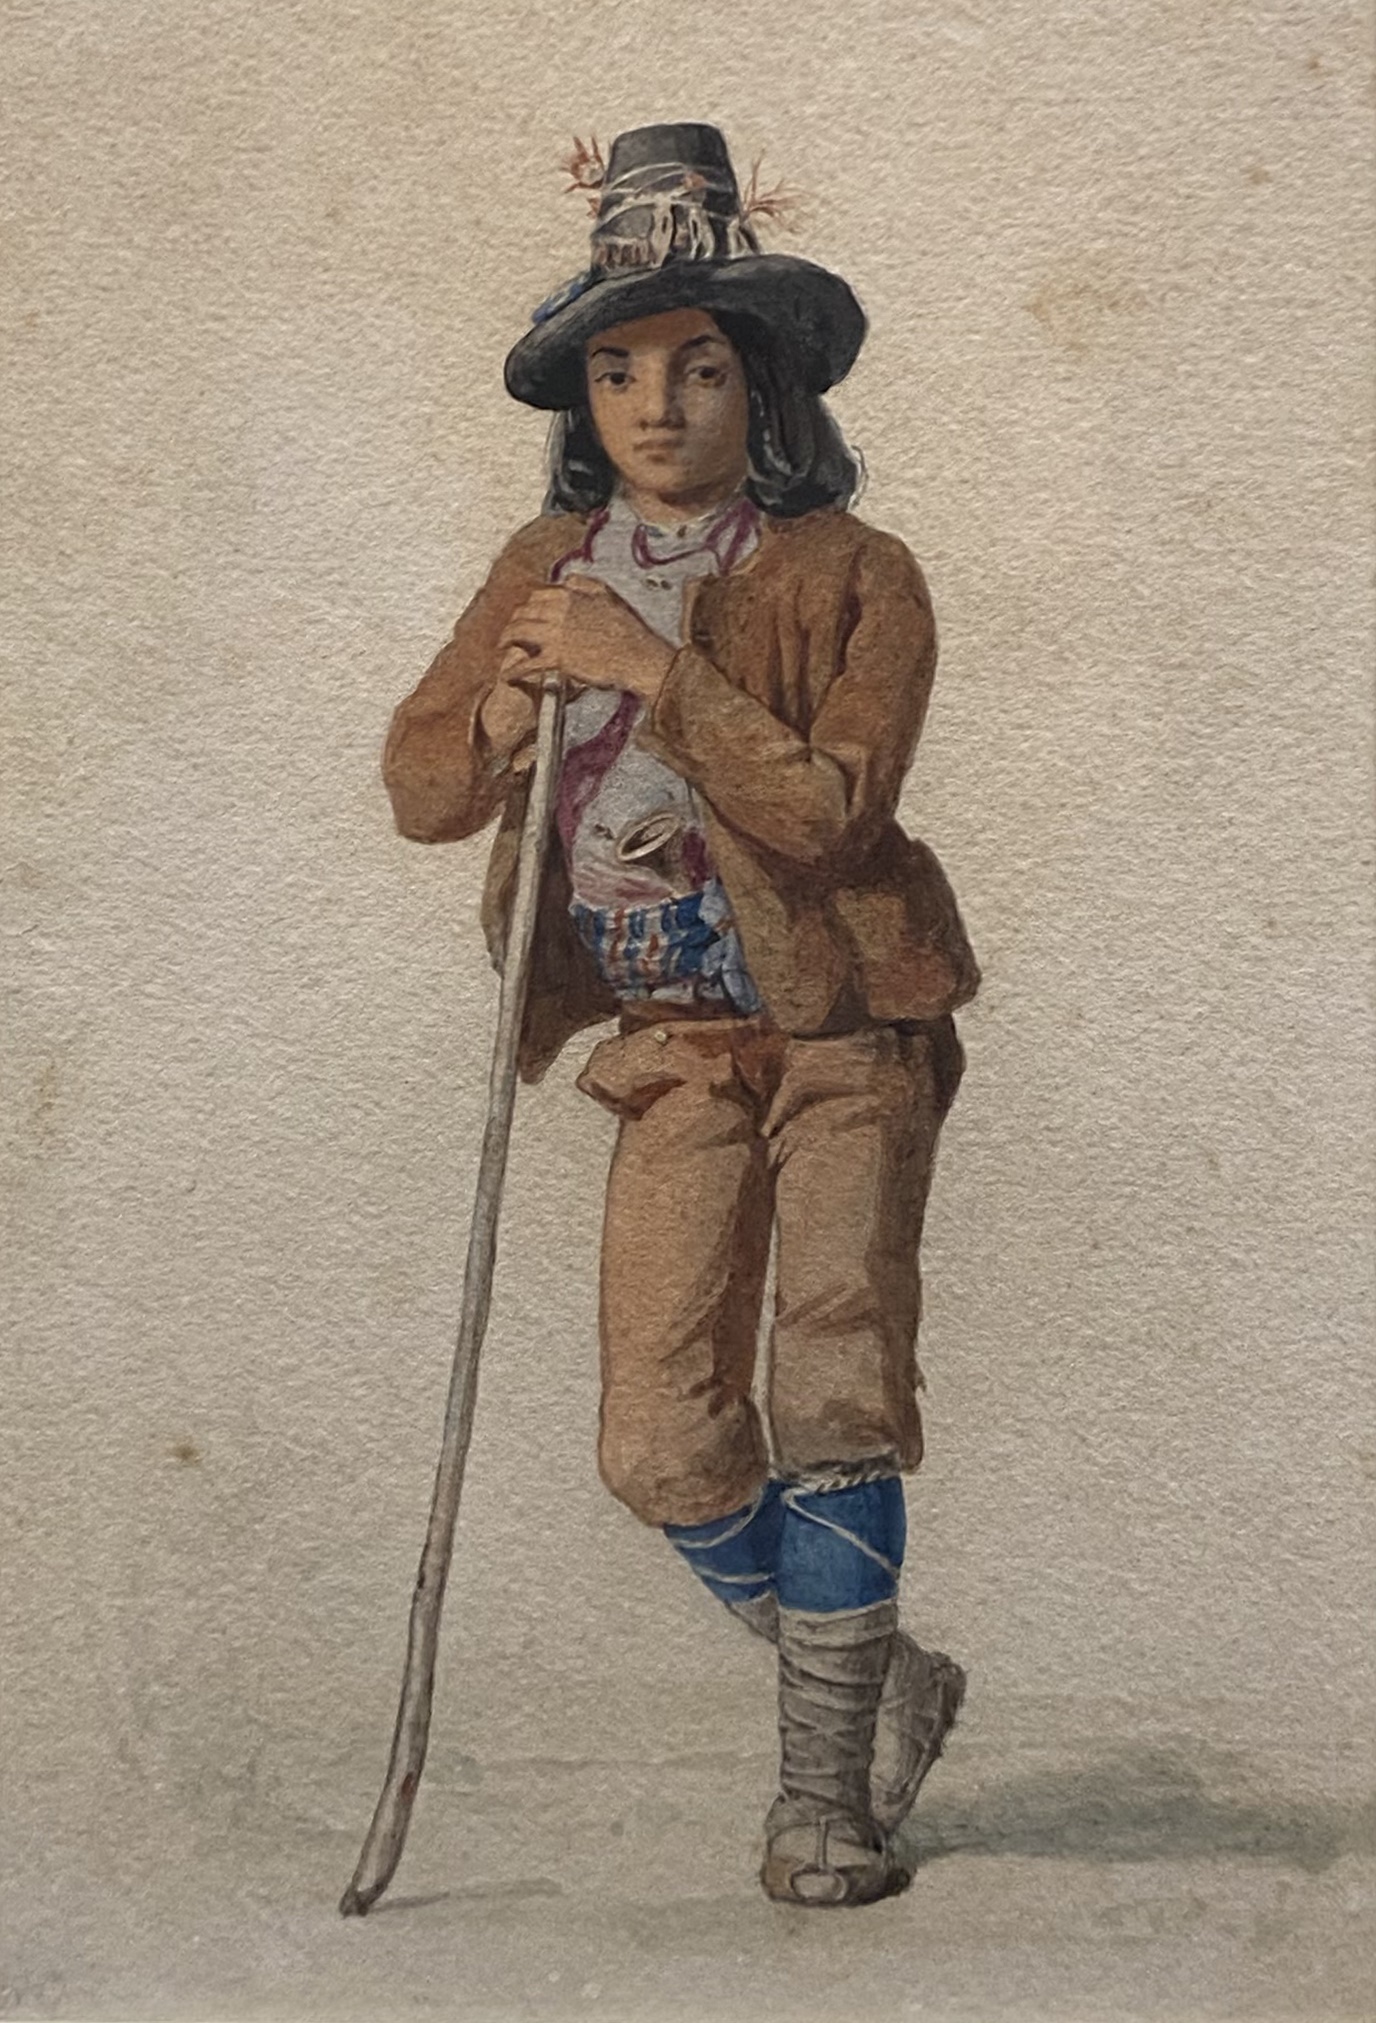 Italian School, mid 19th Century - A Roman Boy, resting on a staff